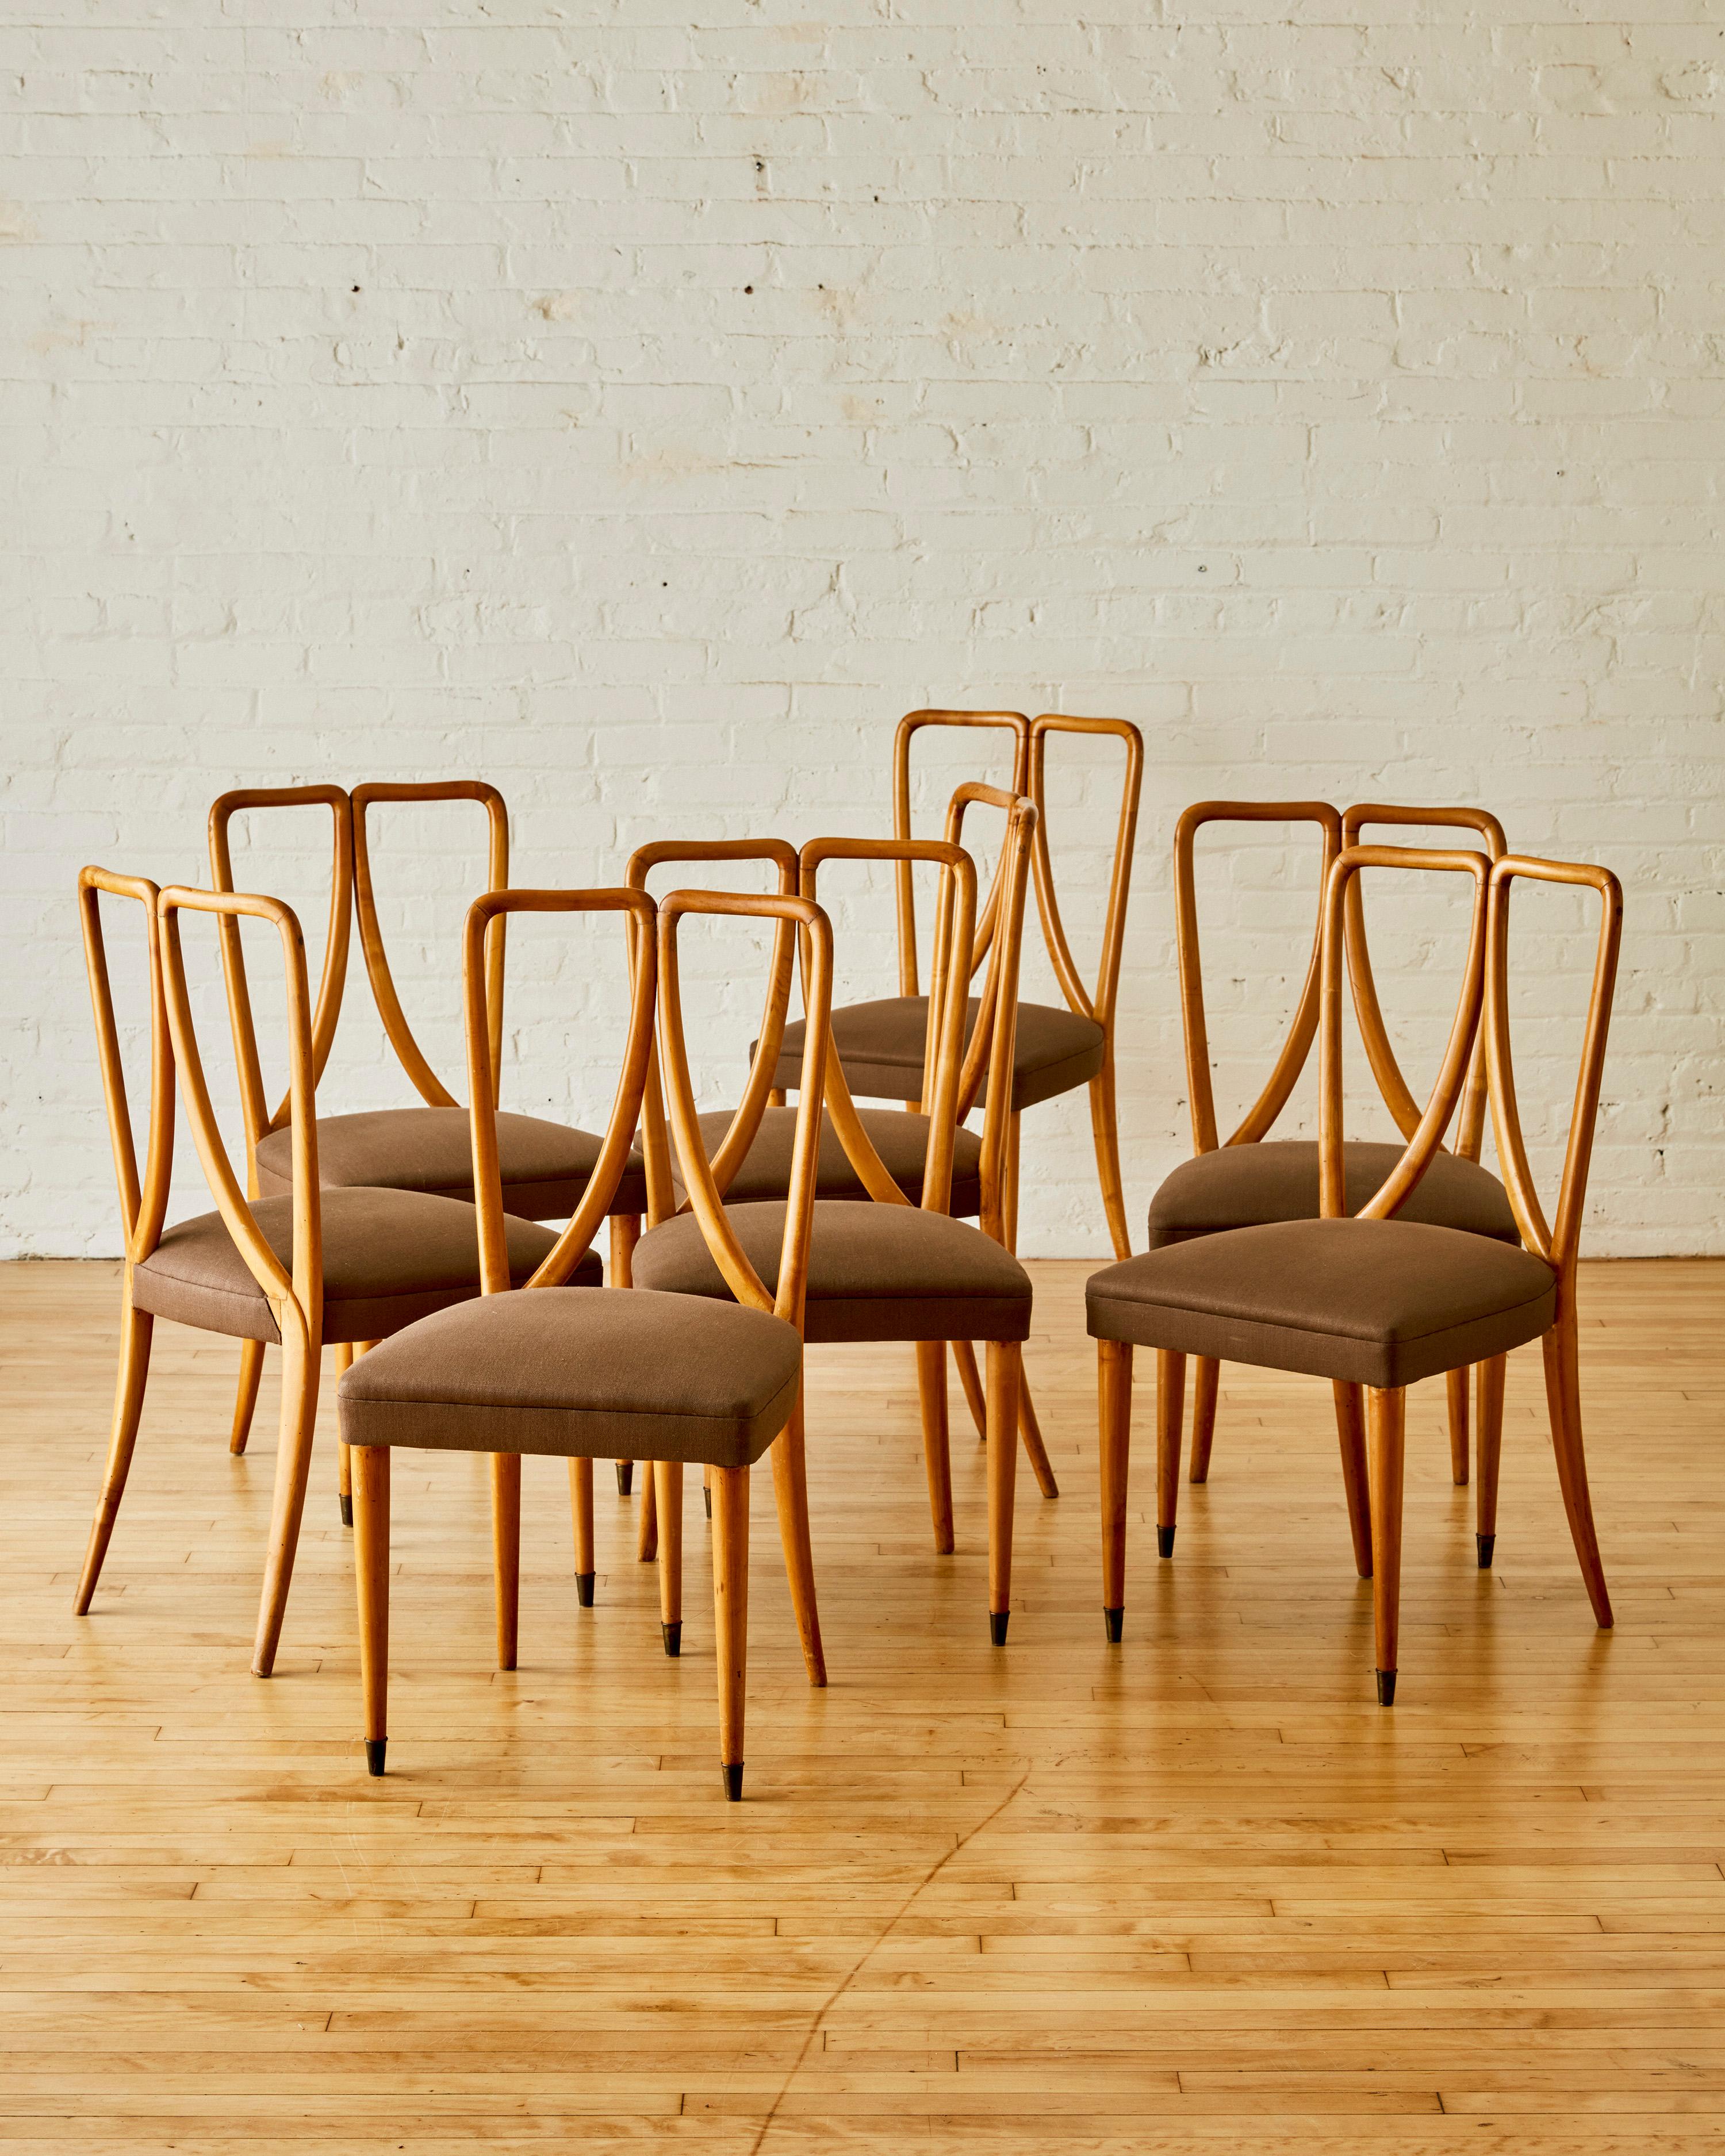 8 Stühle aus Obstholz von Guglielmo Ulrich mit unregelmäßiger offener Rückenlehne, neu mit Leinen gepolstert

Guglielmo Ulrich (geboren 1904 in Mailand - gestorben 1977) war ein italienischer Architekt, Möbeldesigner und Maler. Er wurde in eine